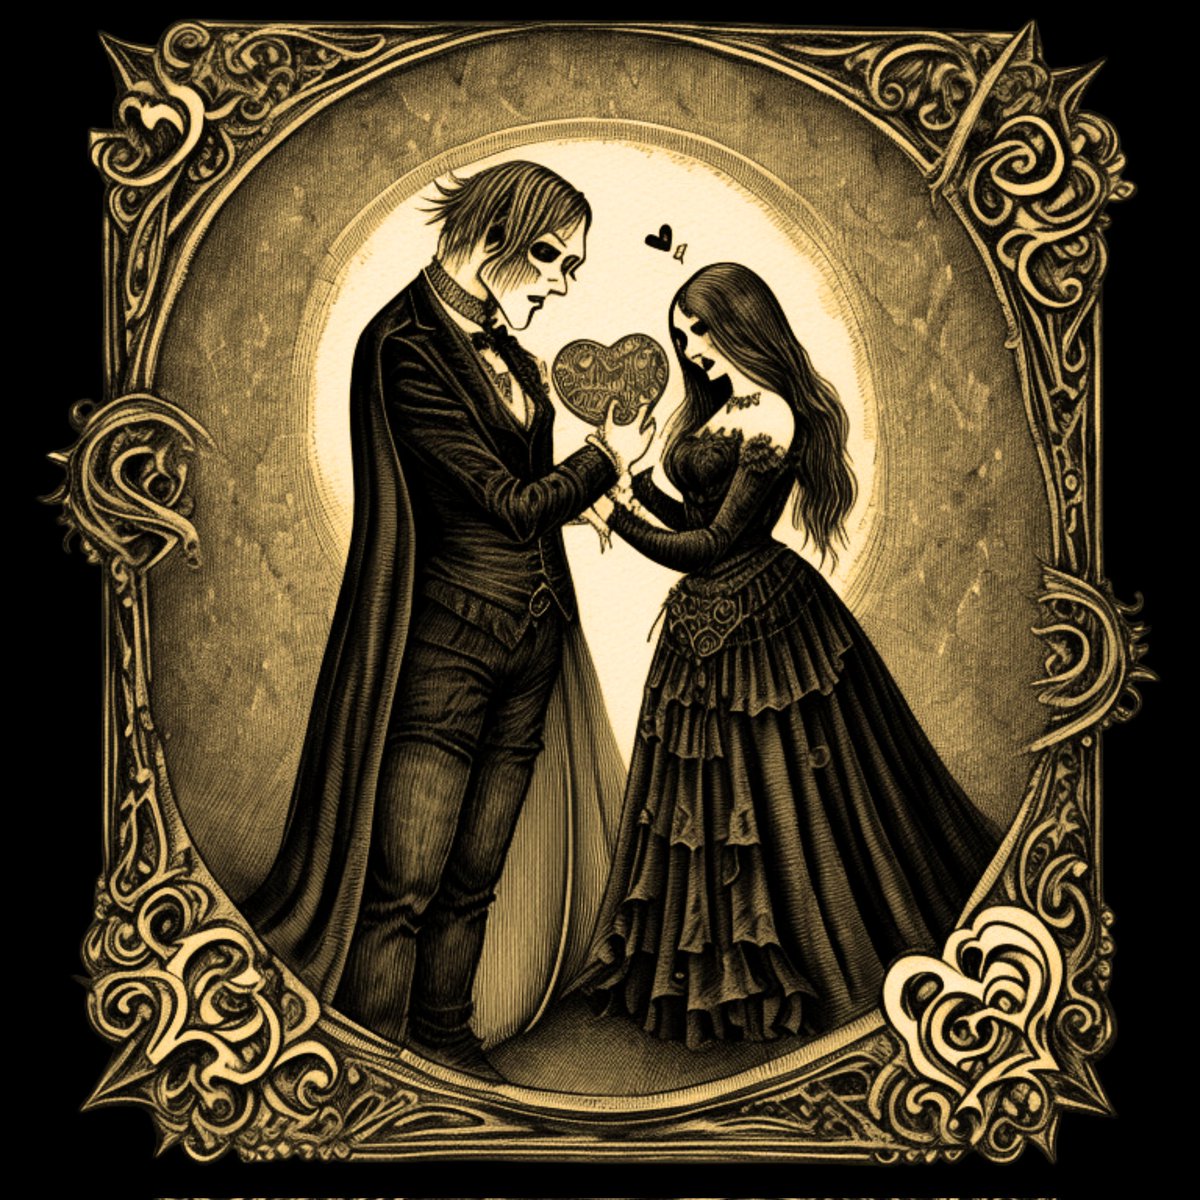 Monster romance...🖤🖤🖤
#monsterromance #darkvalentines #gothiclove #darkfantasy #darkromanticism #alteredai
#lovers #darkromance #ValentinesDay #heartsentwined #victoriangothic #Victorianlovestory